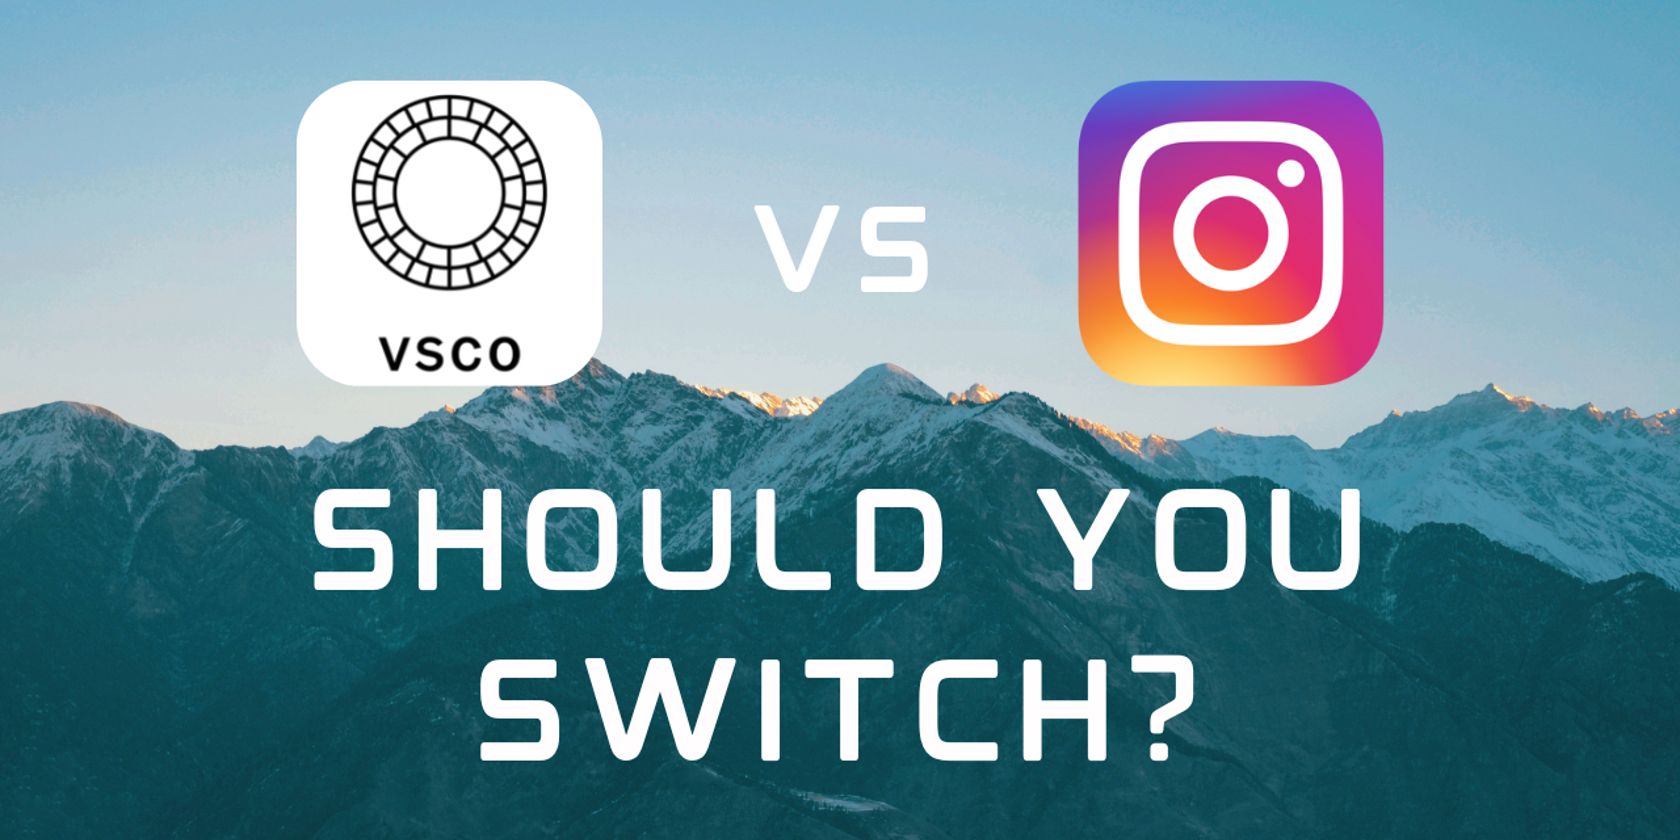 vsco vs instagram featured imaged